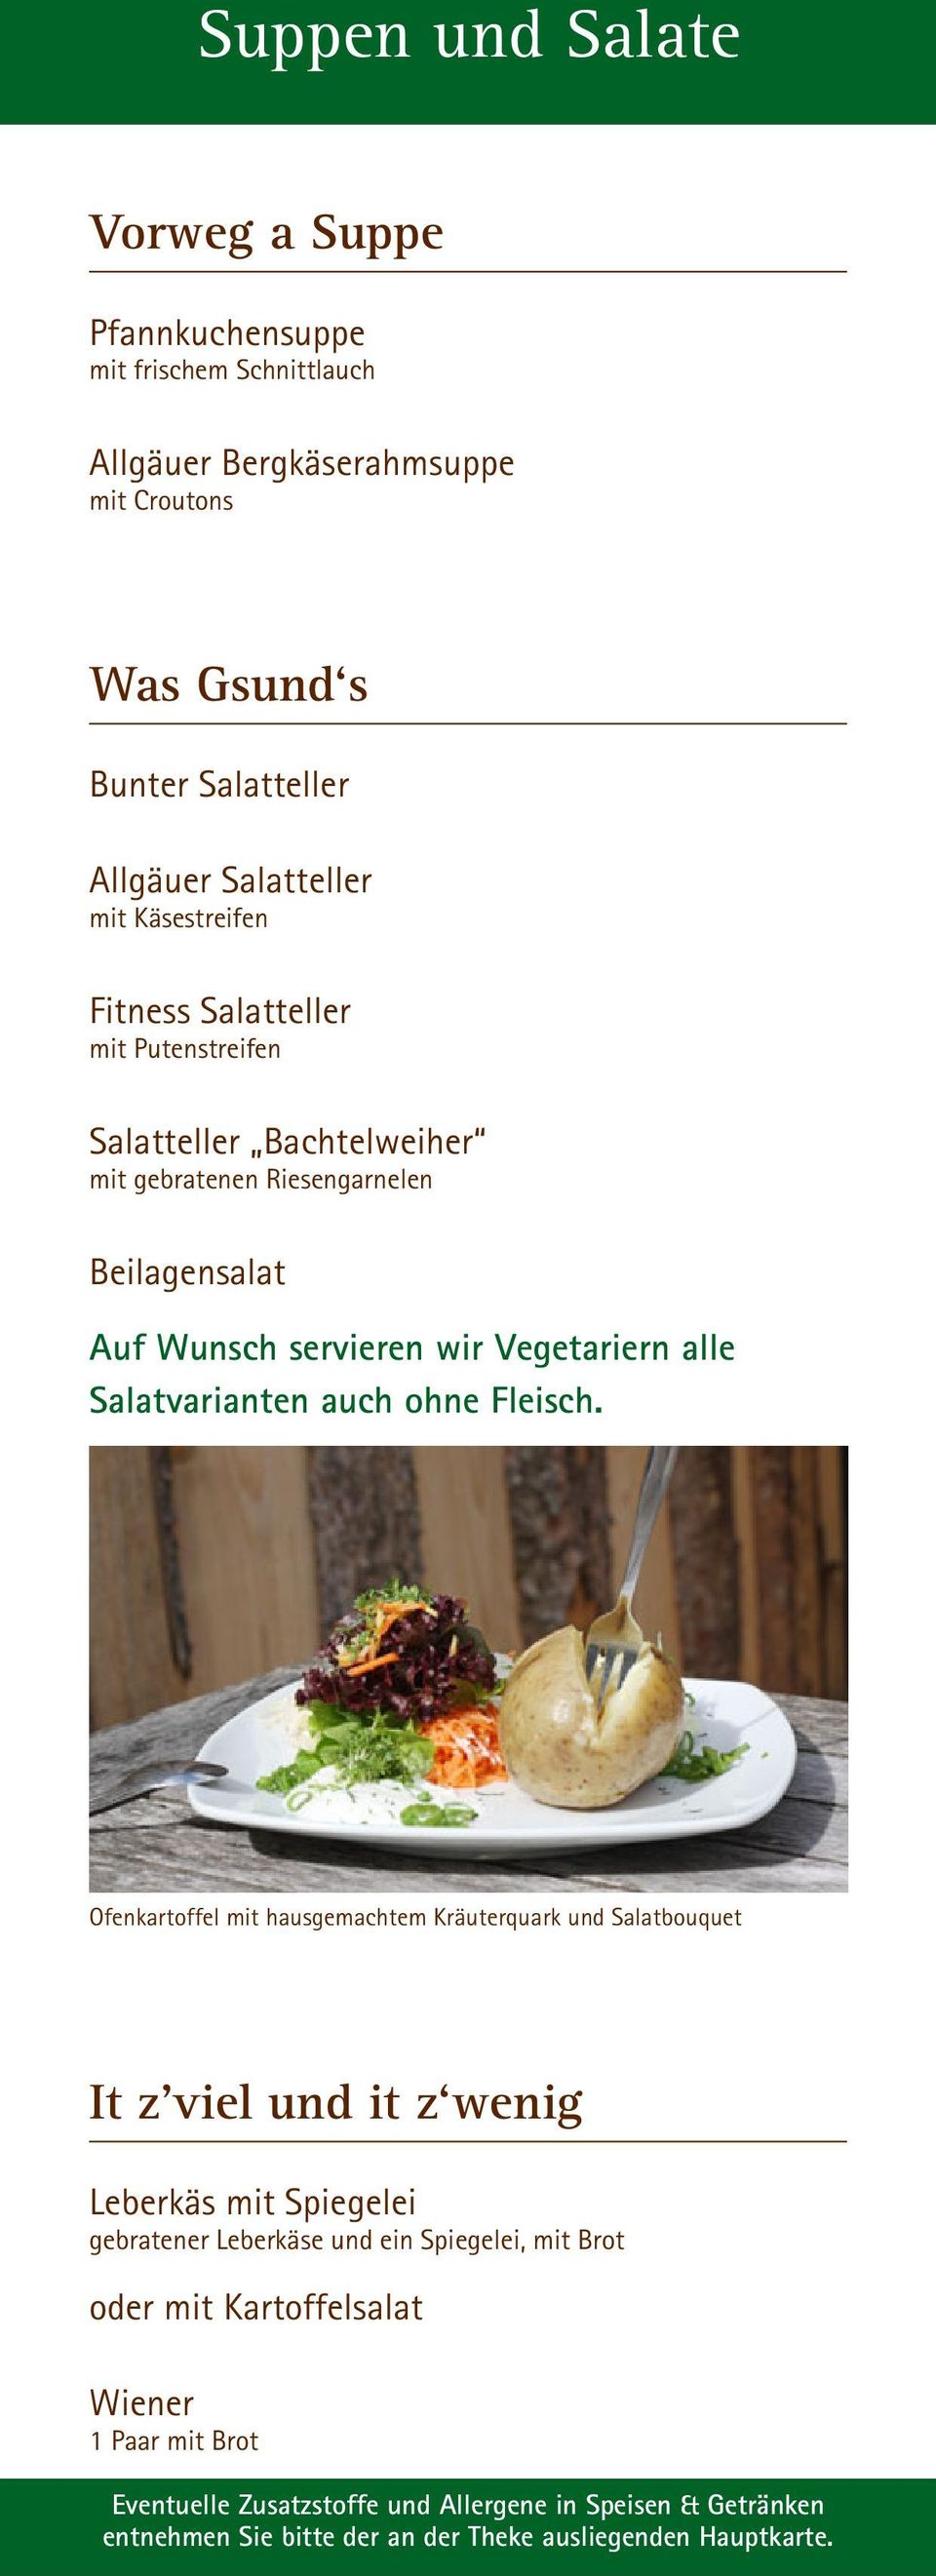 Beilagensalat Auf Wunsch servieren wir Vegetariern alle Salatvarianten auch ohne Fleisch.